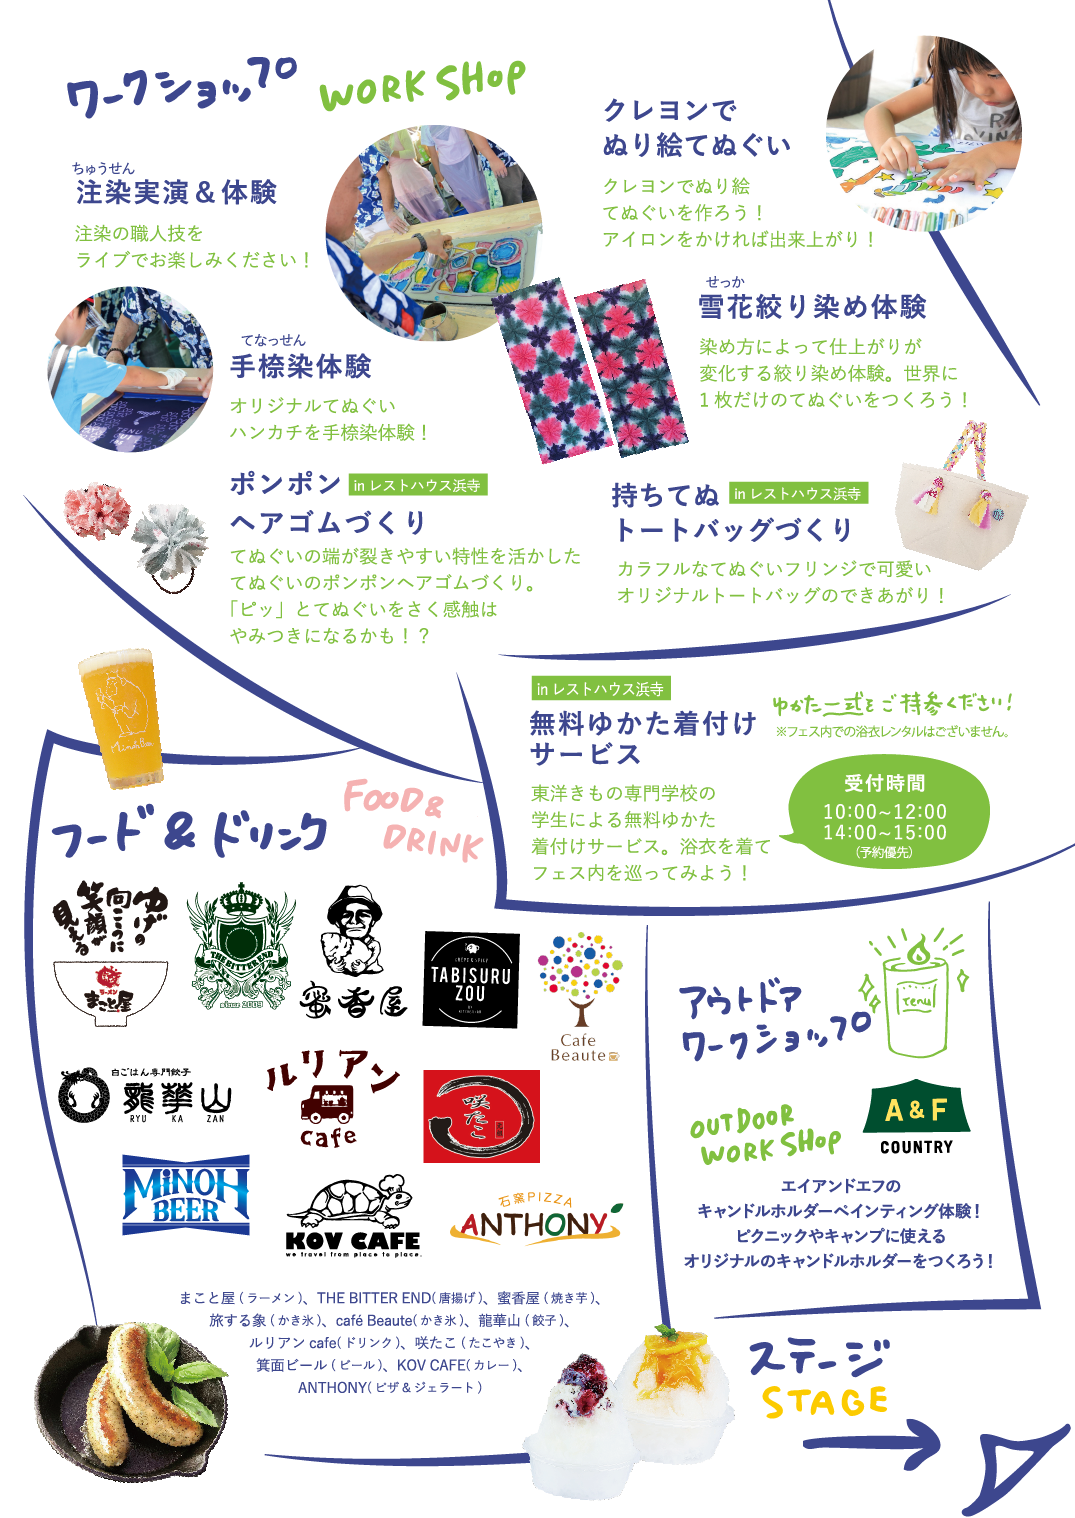 タイムテーブル 出演者情報など 大阪の堺で行われるてぬぐいフェス 会場は浜寺公園中央噴水広場